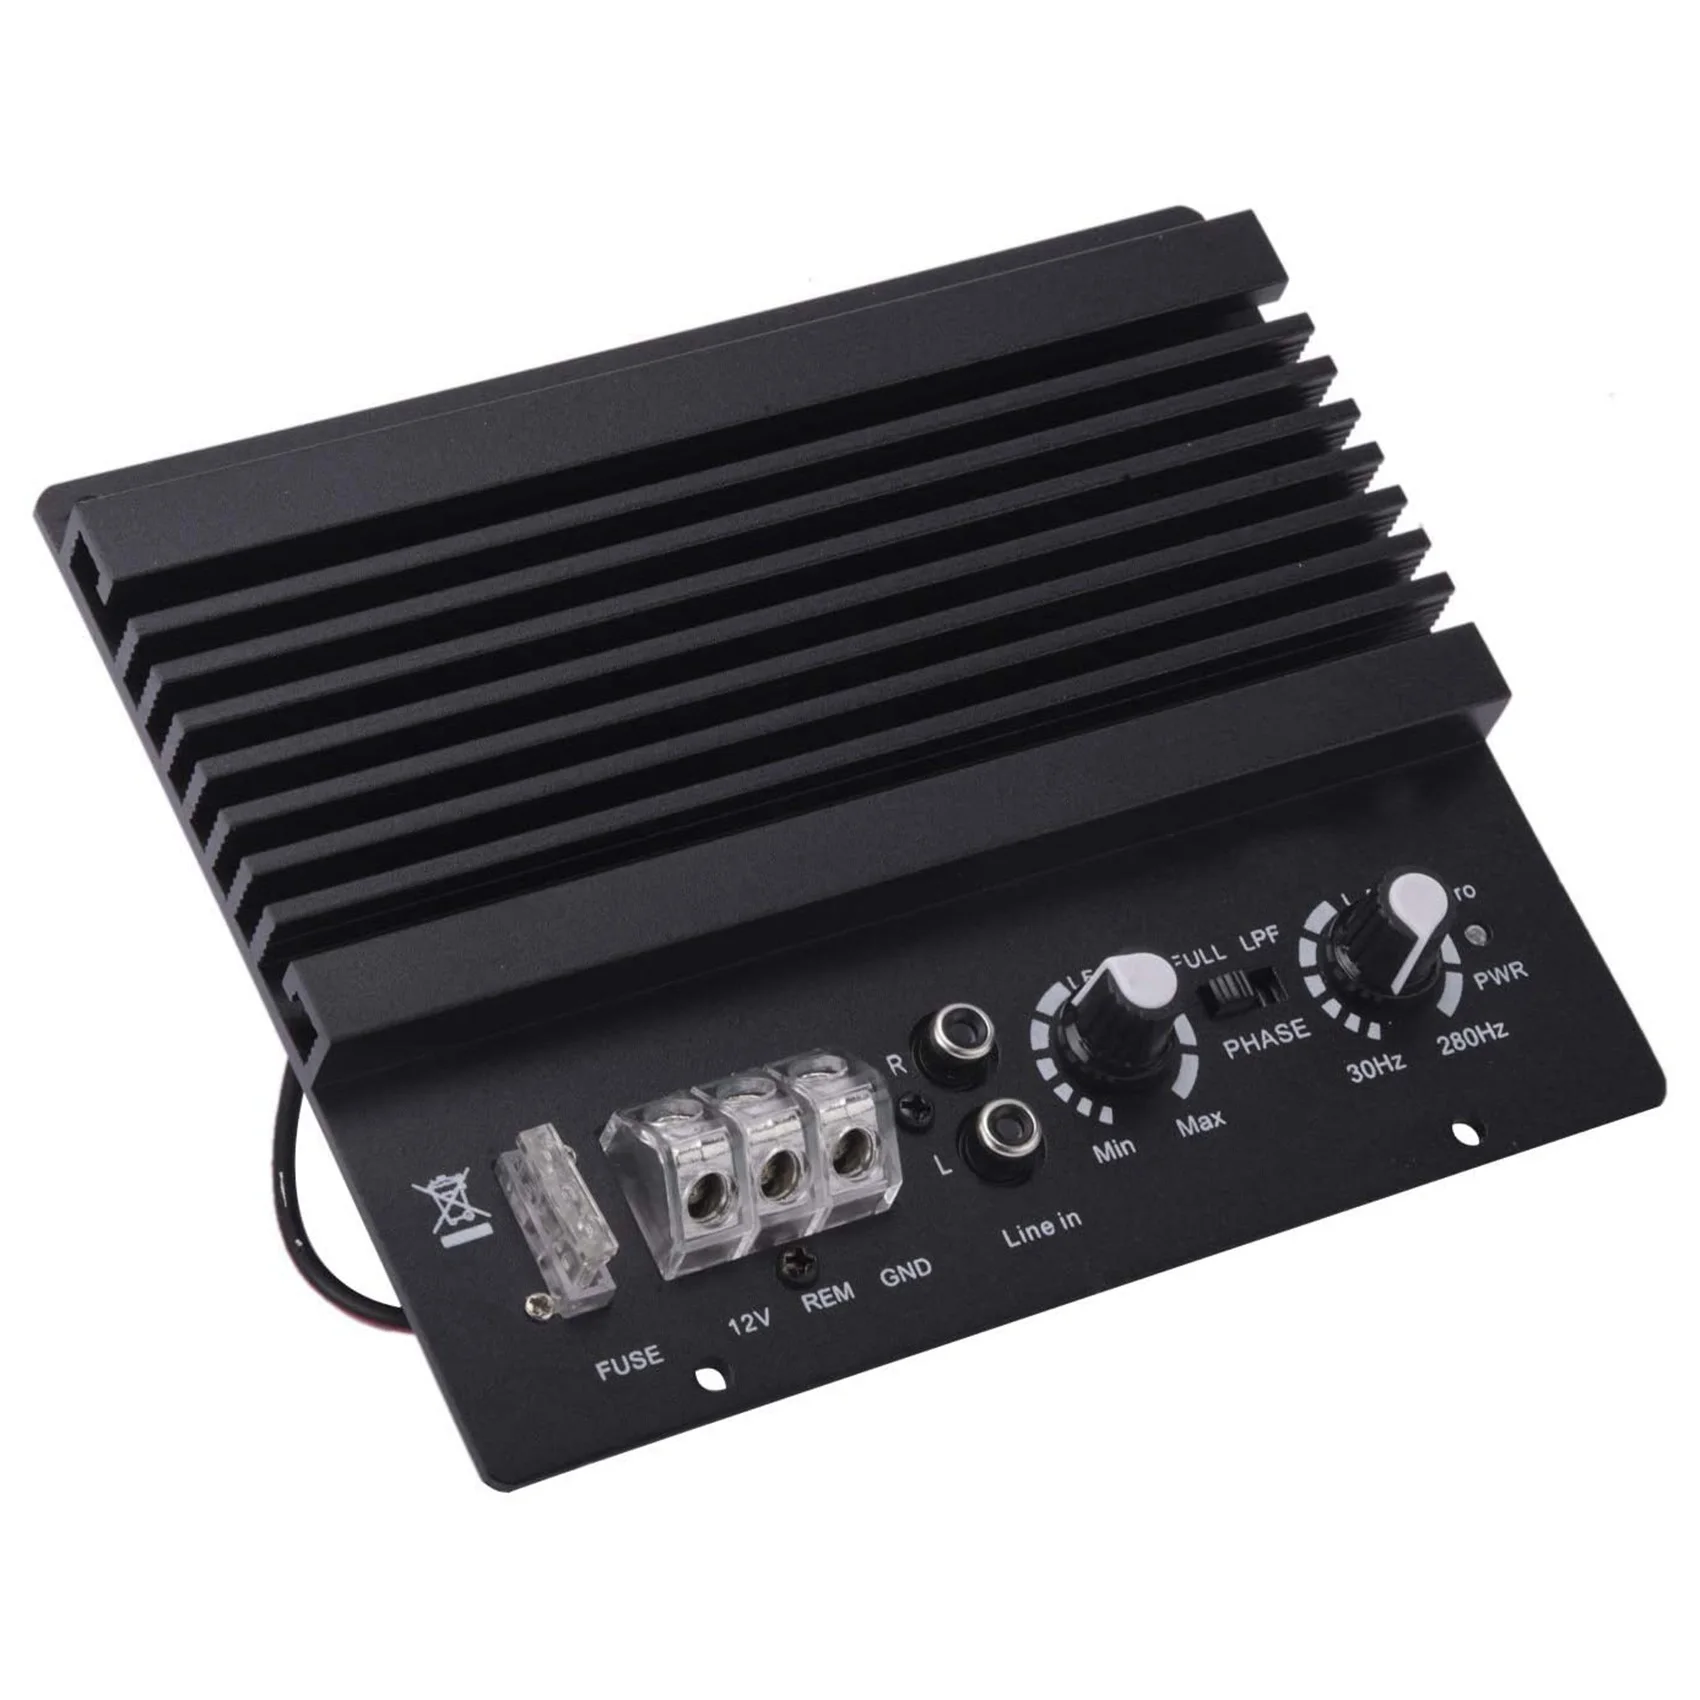 

1000W Car Audio High Power Amplifier Amp Board Powerful Bass Sub Woofer Board 12V